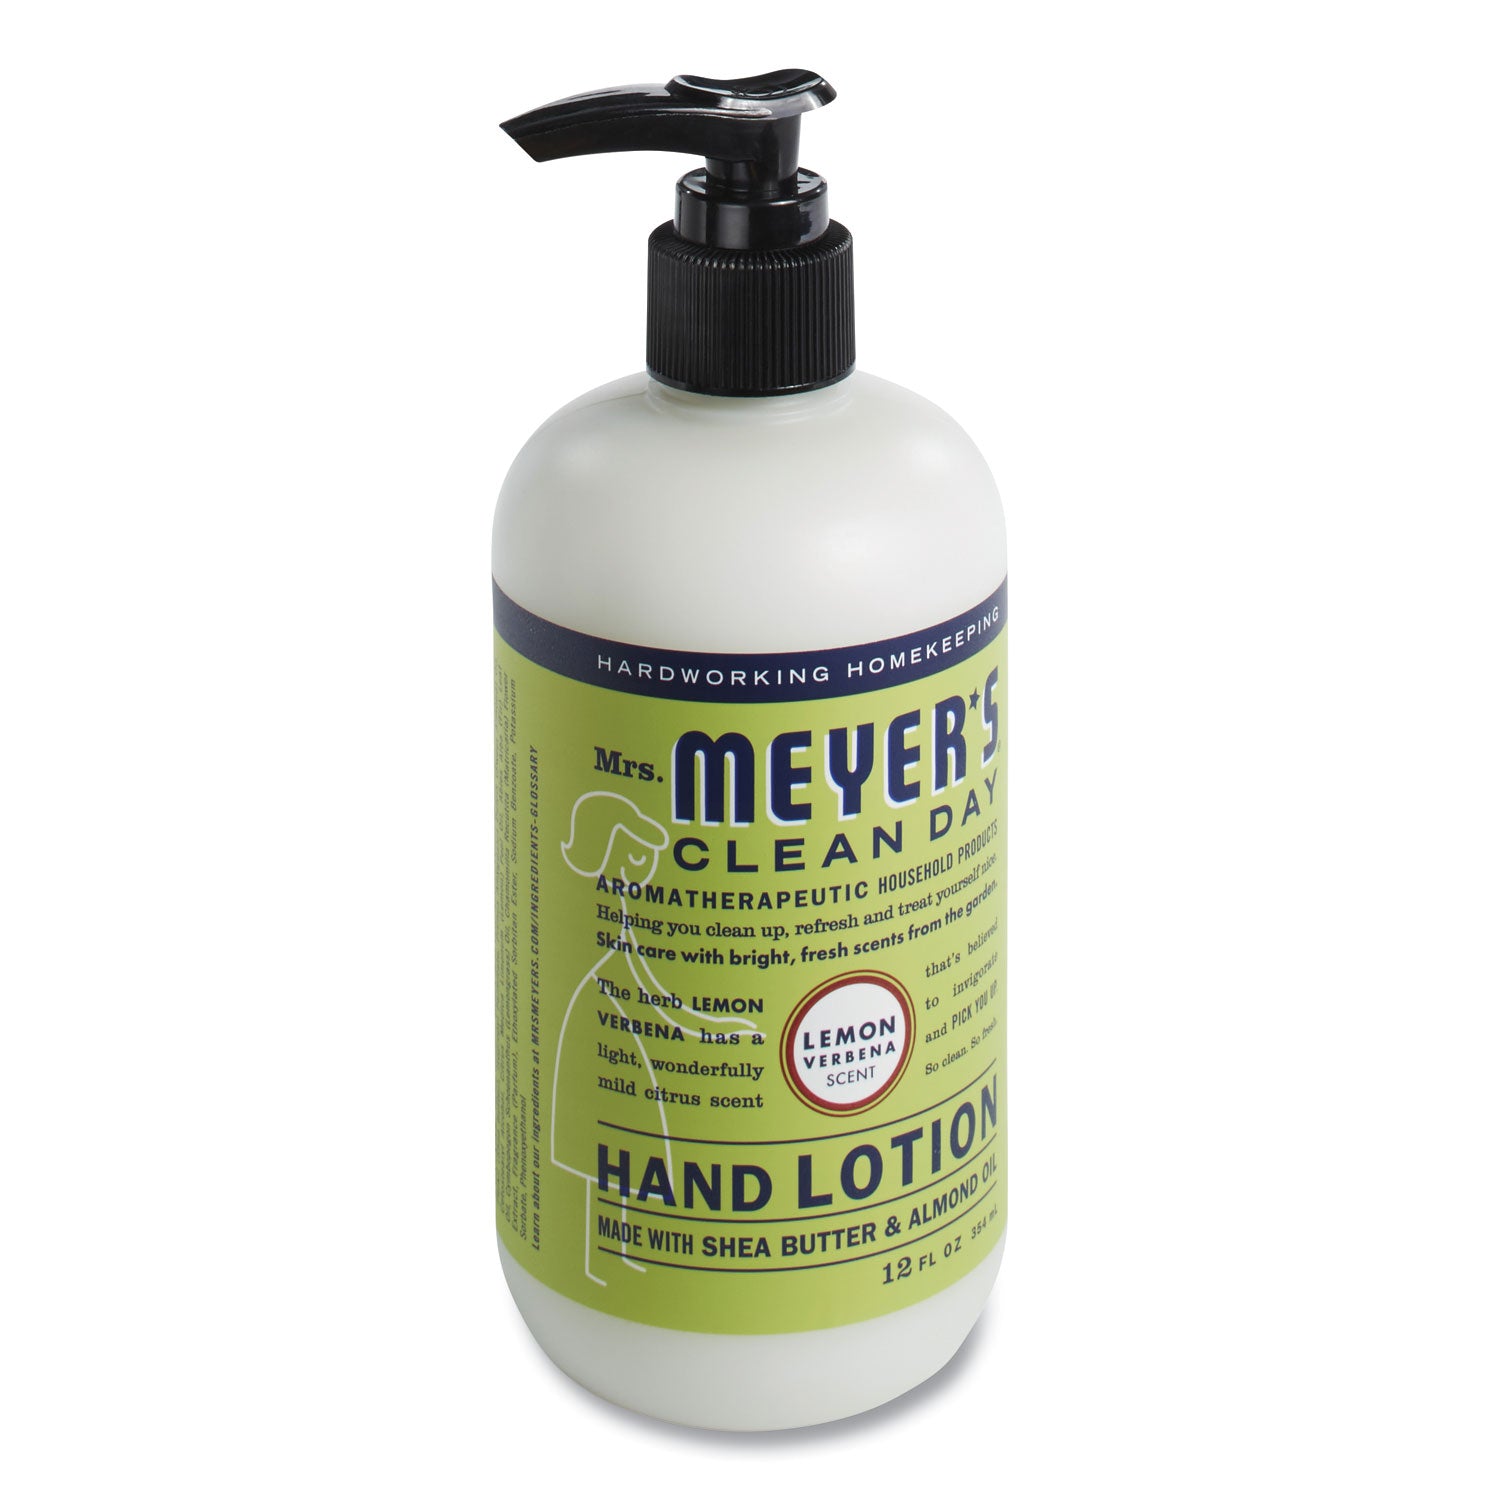 clean-day-hand-lotion-12-oz-pump-bottle-lemon-verbena_sjn686585 - 2